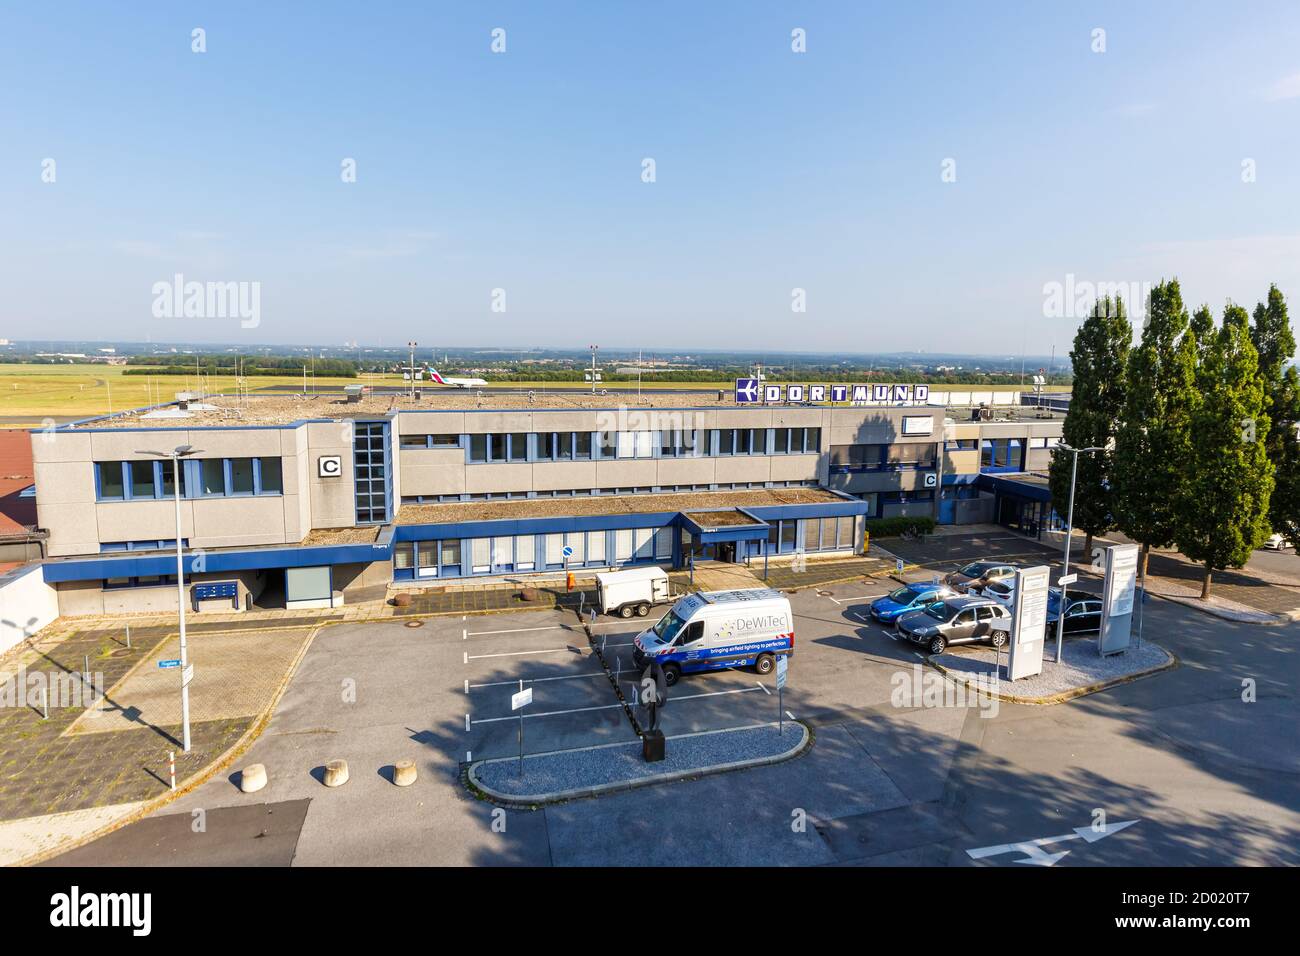 Dortmund, Allemagne - 10 août 2020 : bâtiment du terminal de l'aviation générale de l'aéroport de Dortmund en Allemagne. Banque D'Images